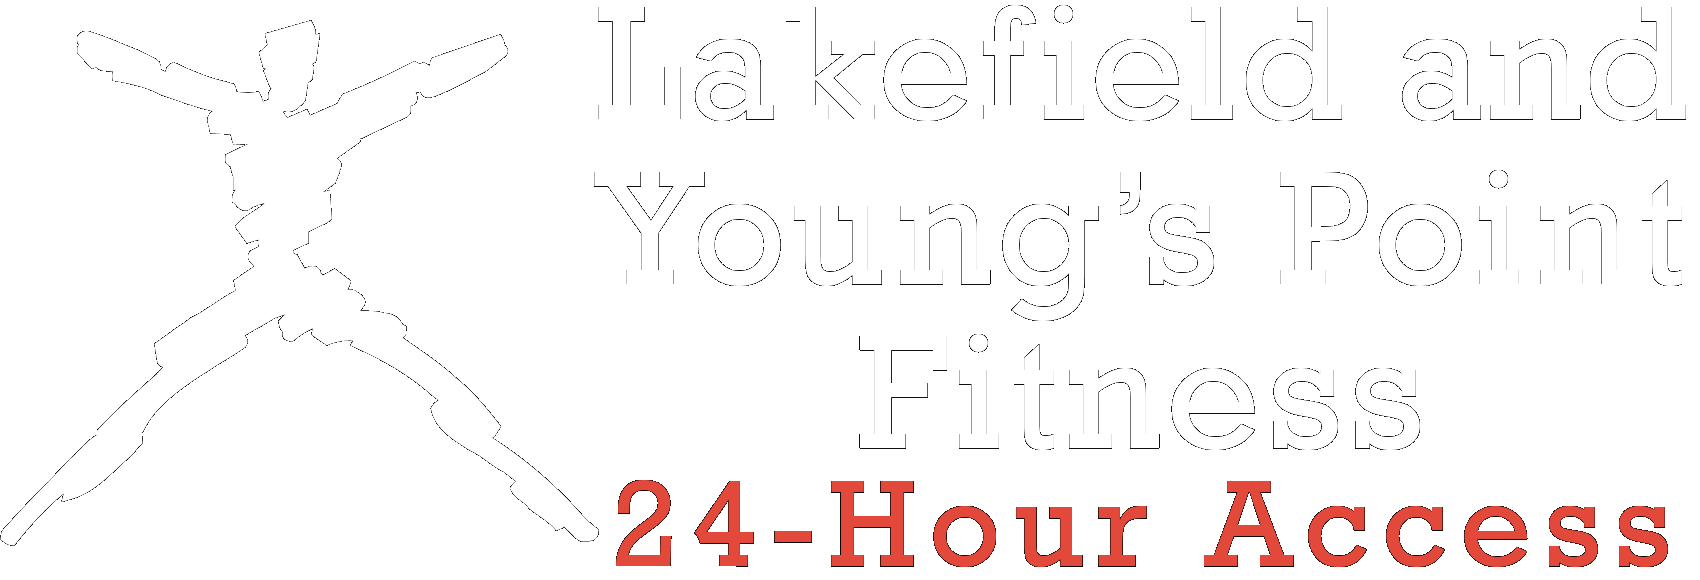 Lakefield 24-Hour Fitness 57 Bridge St, Lakefield Ontario K0L 2H0